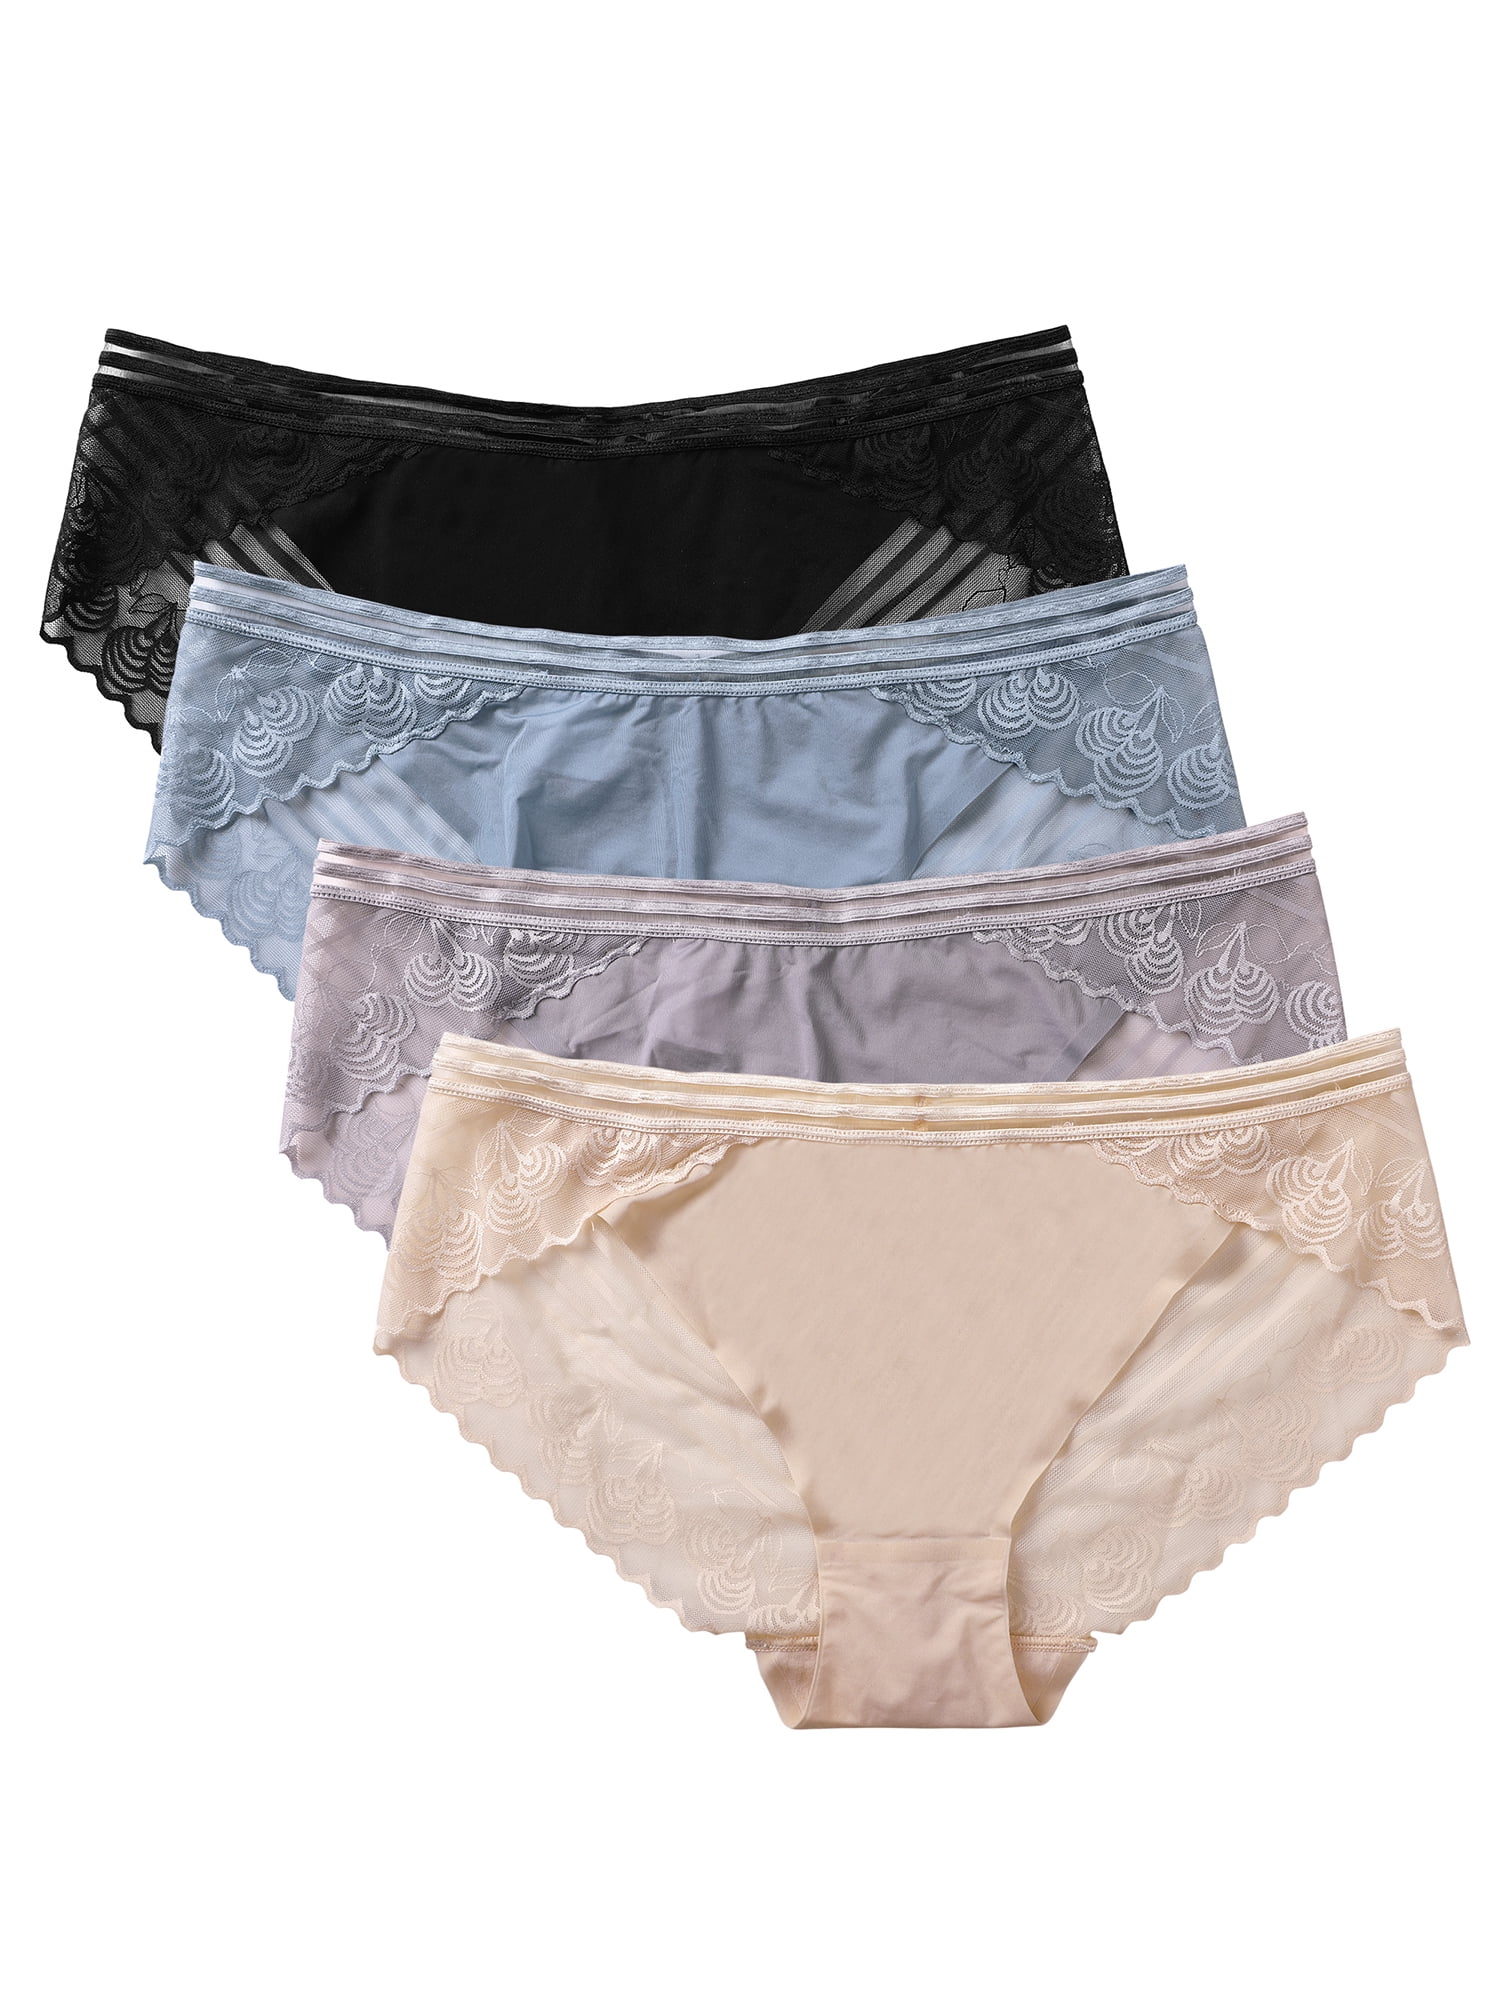 Charmo Women's Lace Bikini Panties Nylon Underwears Lady Sexy Lace Panty, 4  Packs